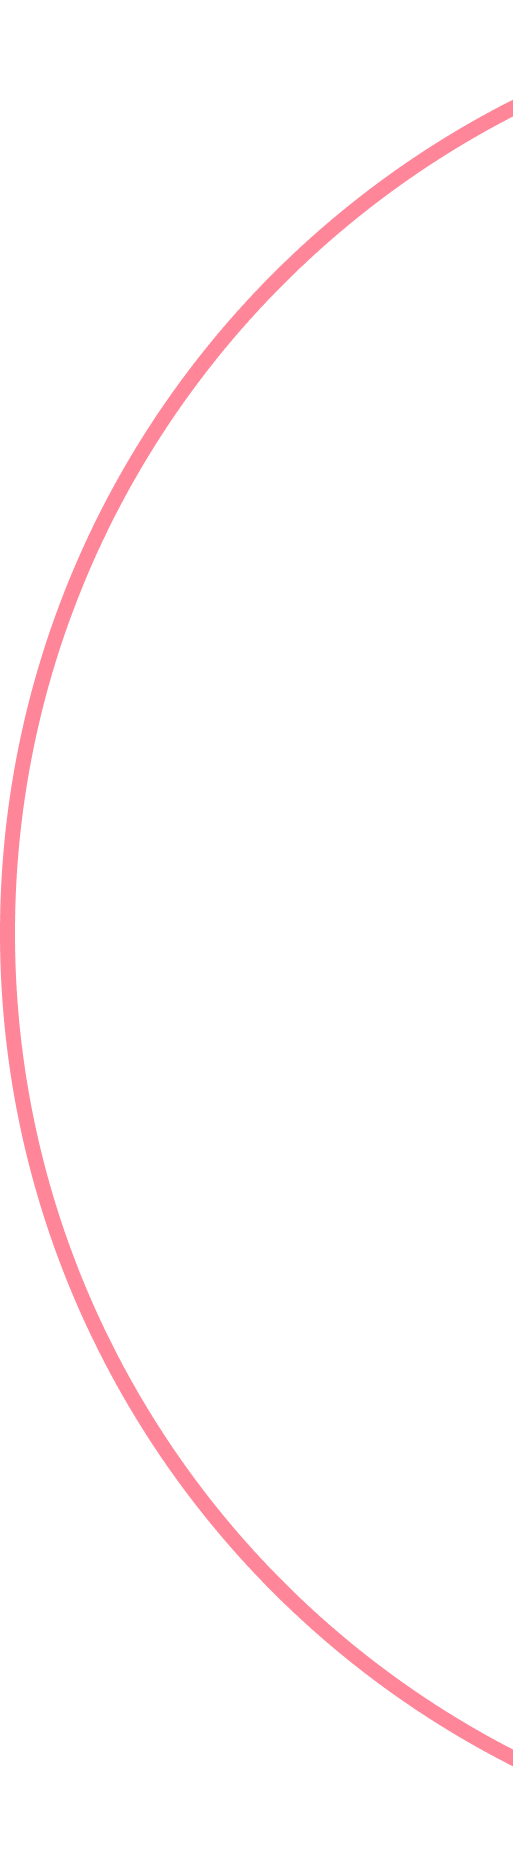 Ellipse shape pink